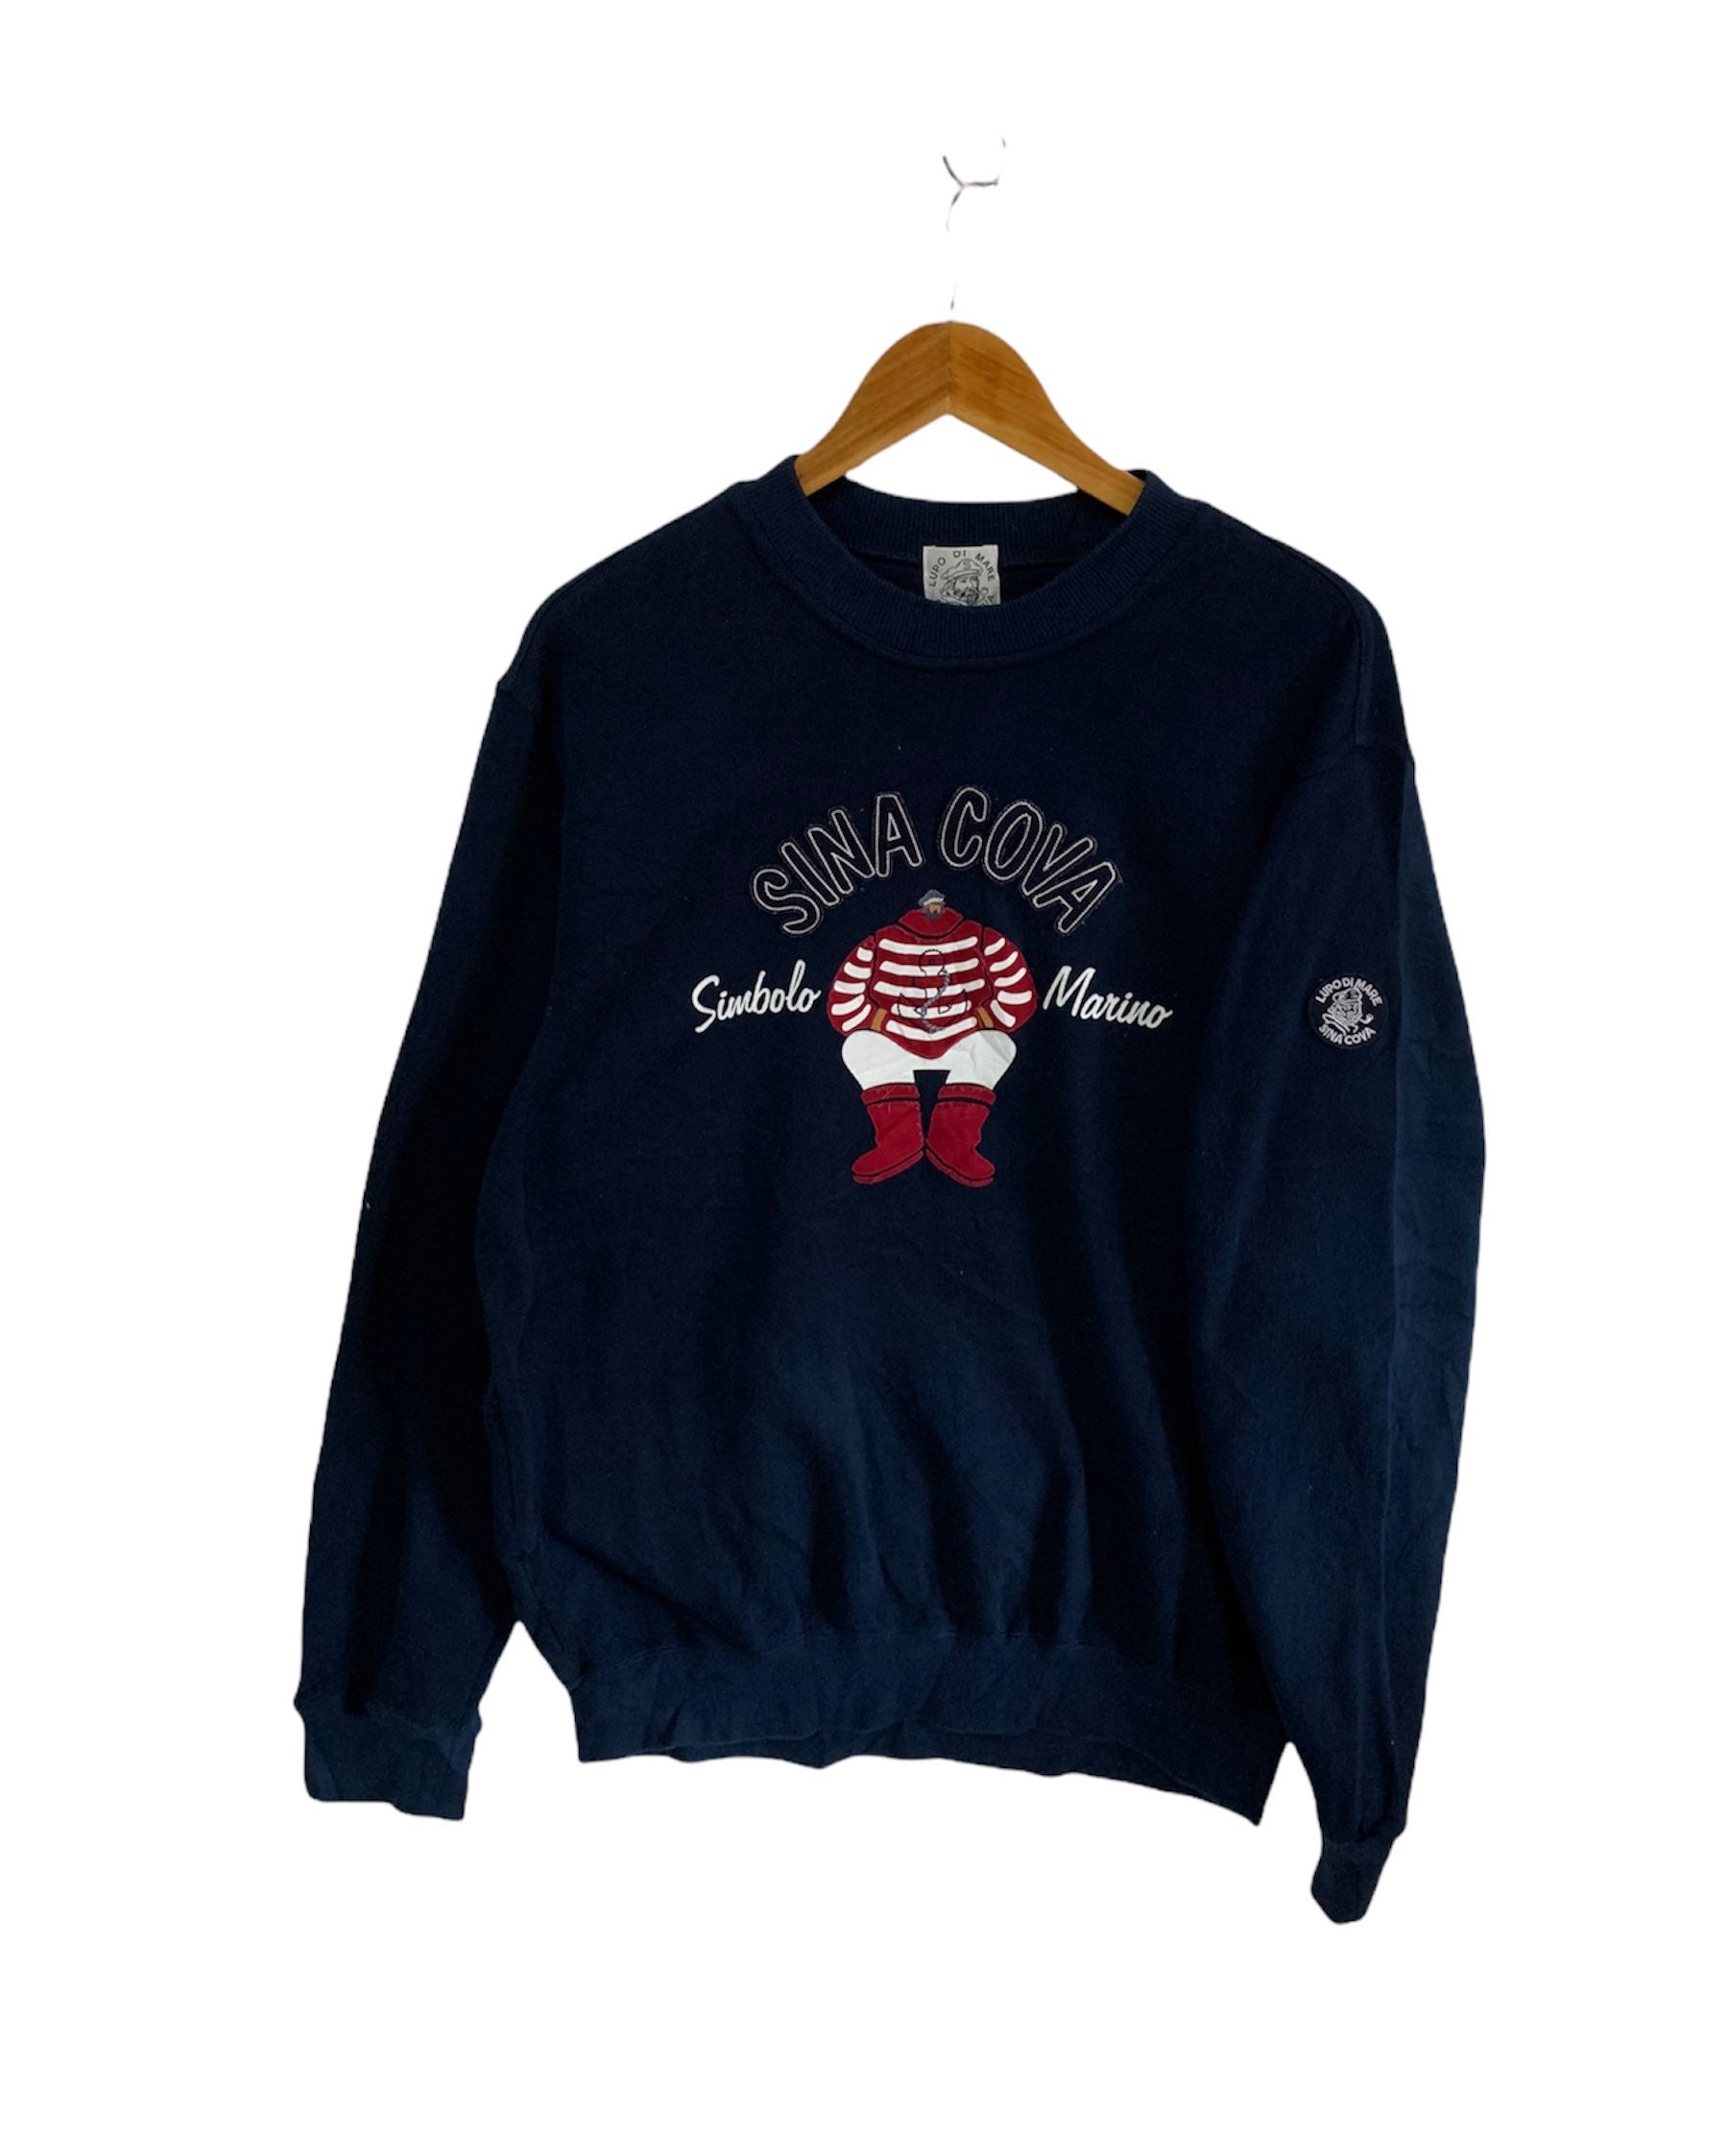 Vintage 90s Lupo Di Mare Simbolo Marino Sweatshirt Sina Cova